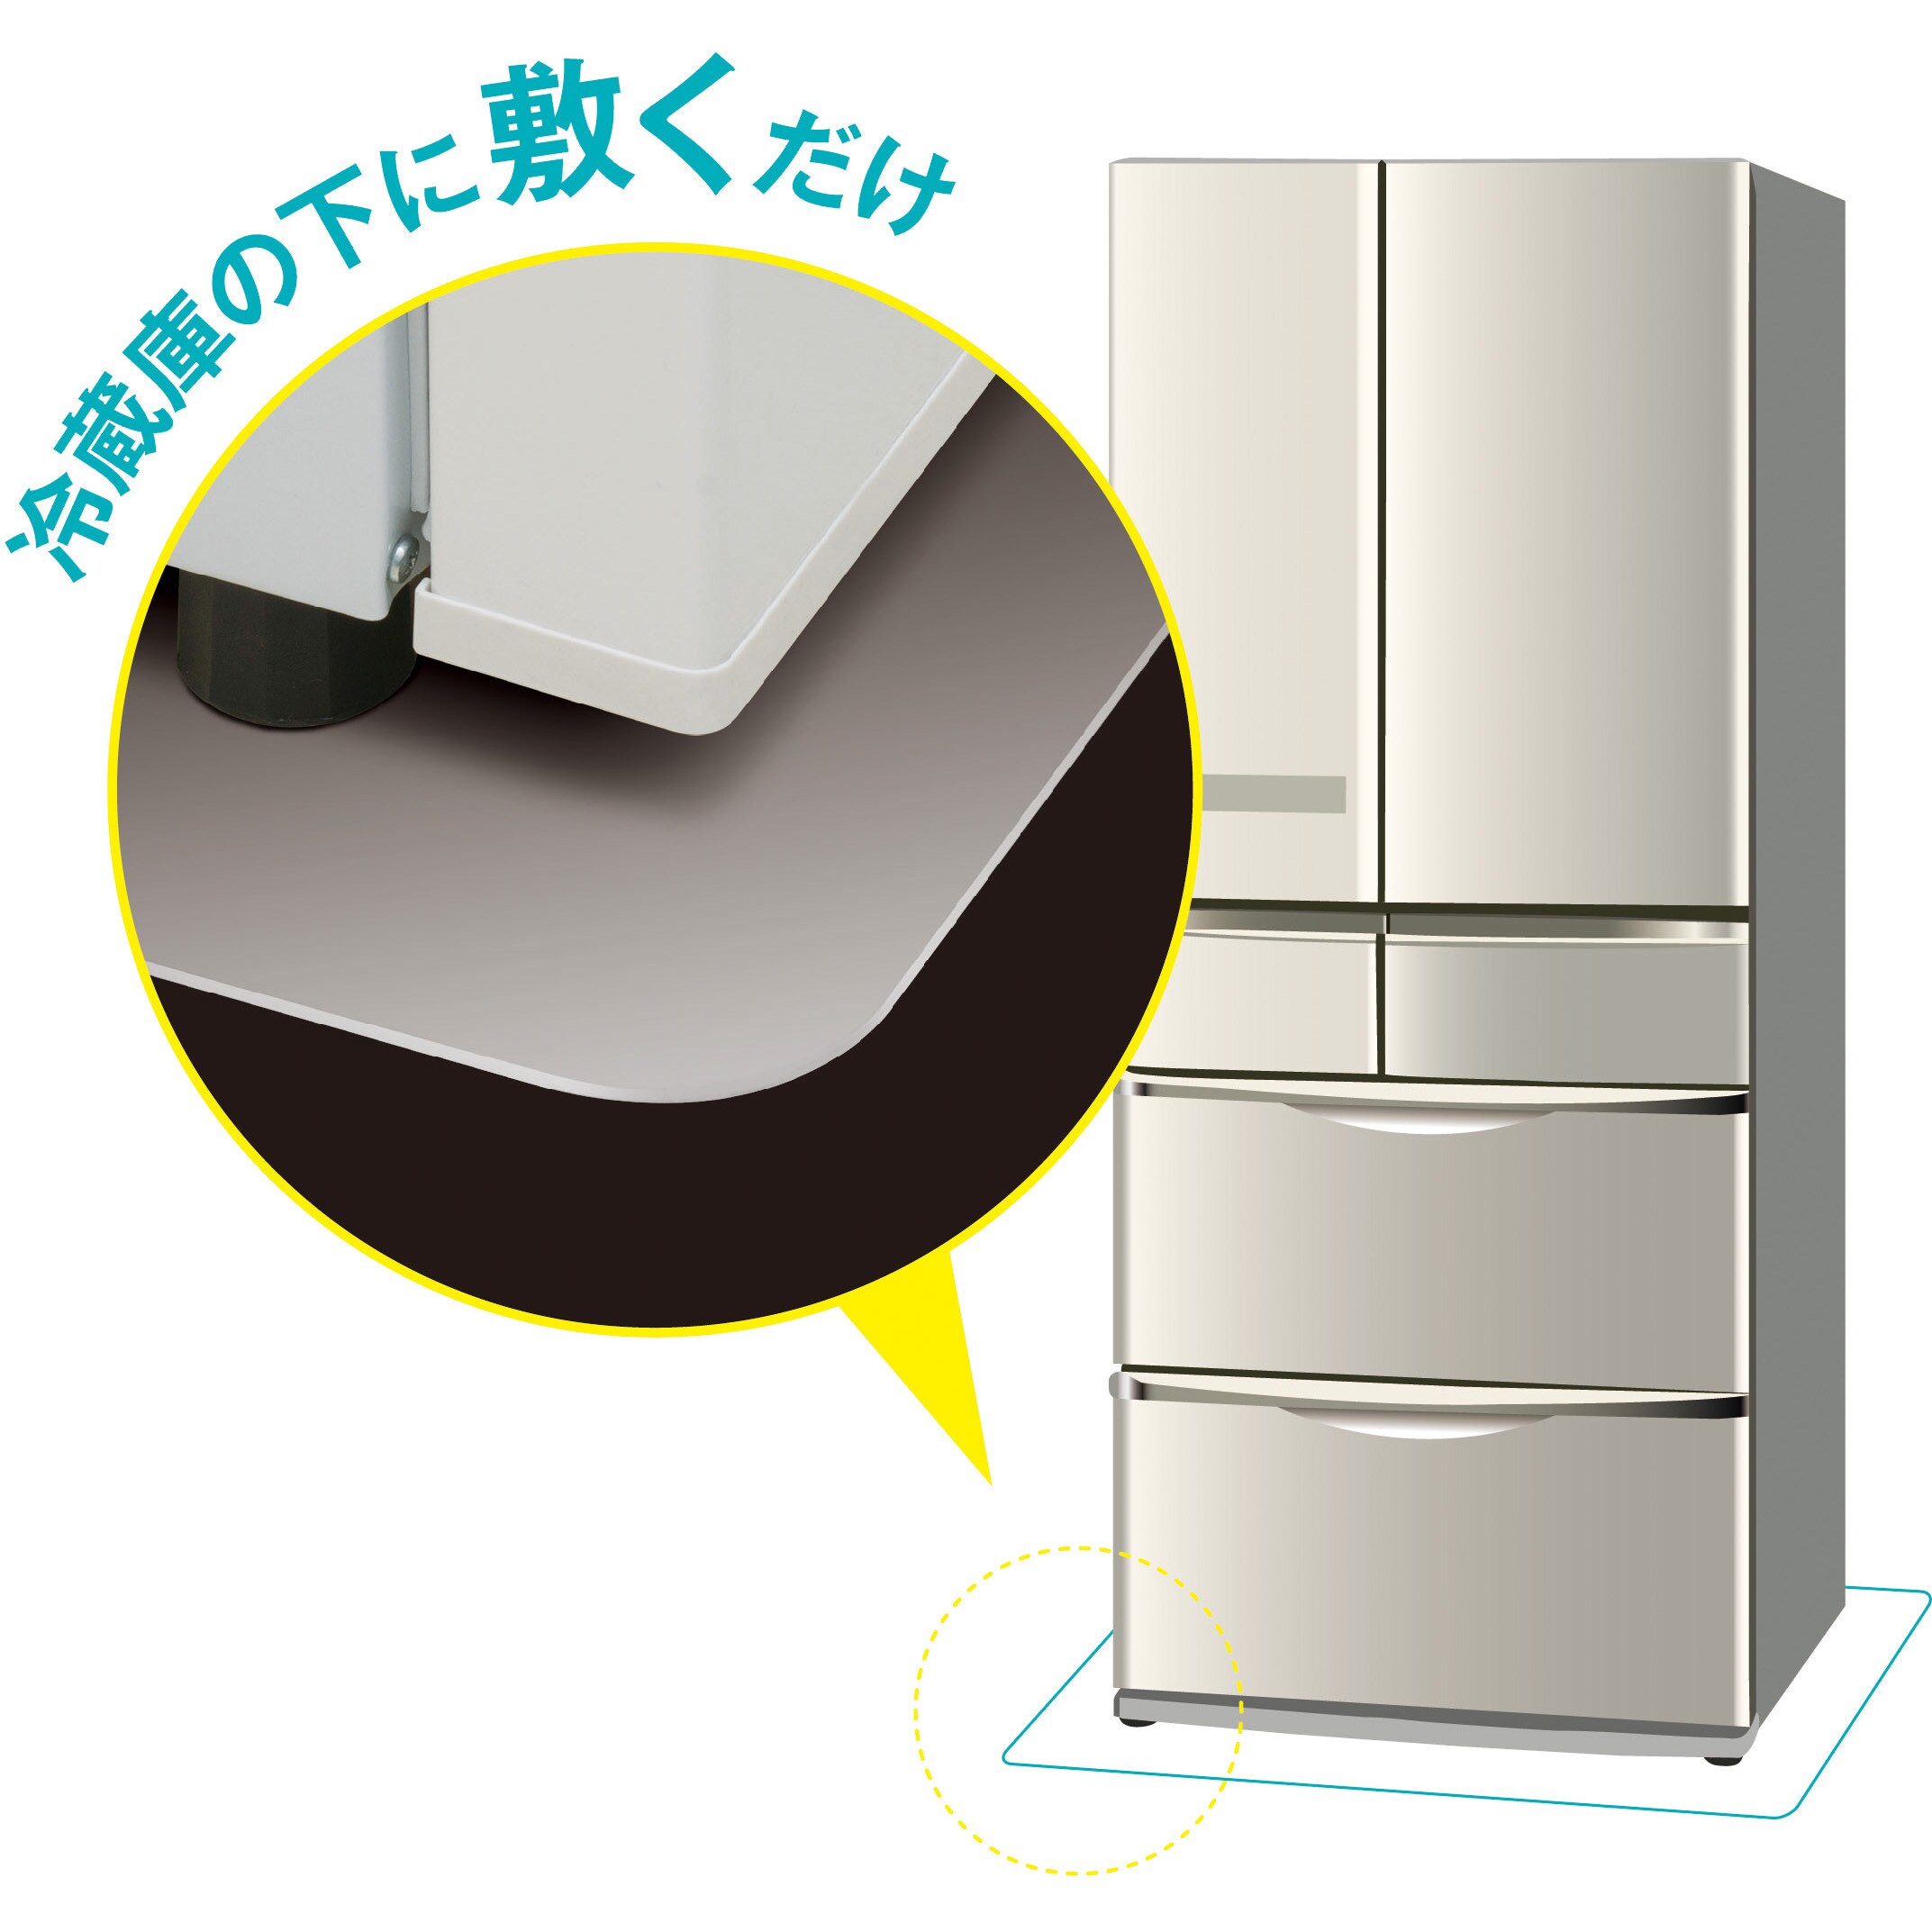 1134円 本物品質の 冷蔵庫下敷き 防虫 ムシブロック LLサイズ 740 860 ZC-RM30